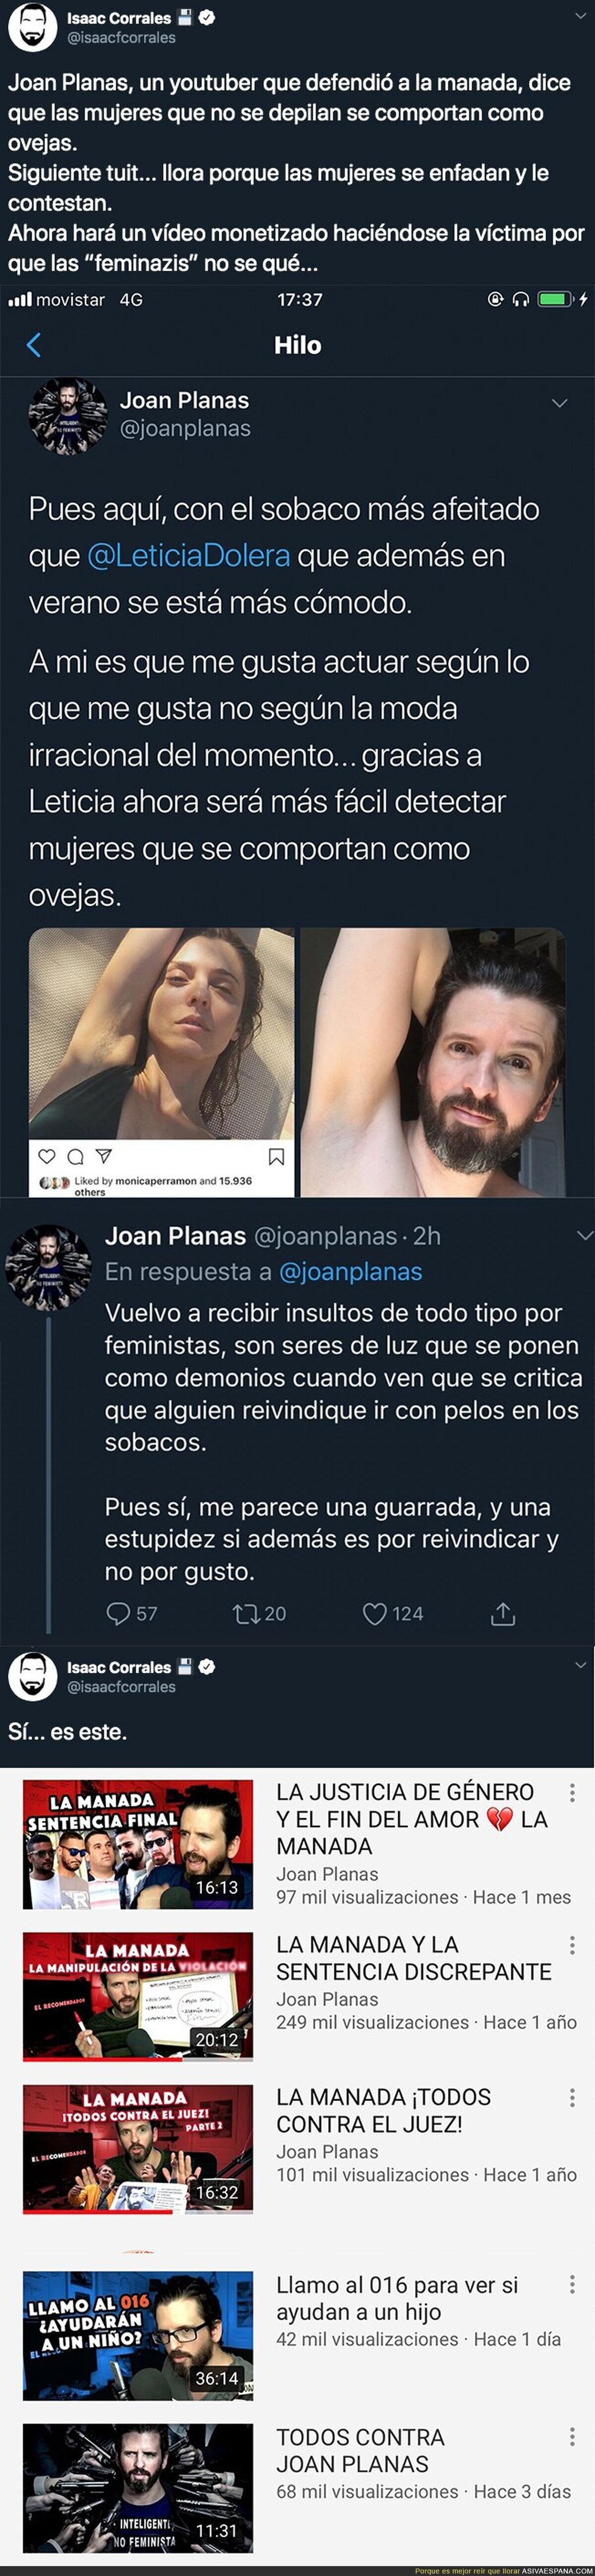 El pasado oscuro de Joan Planas, el Youtuber que intenta ridiculizar a las mujeres porque no se depilan las axilas